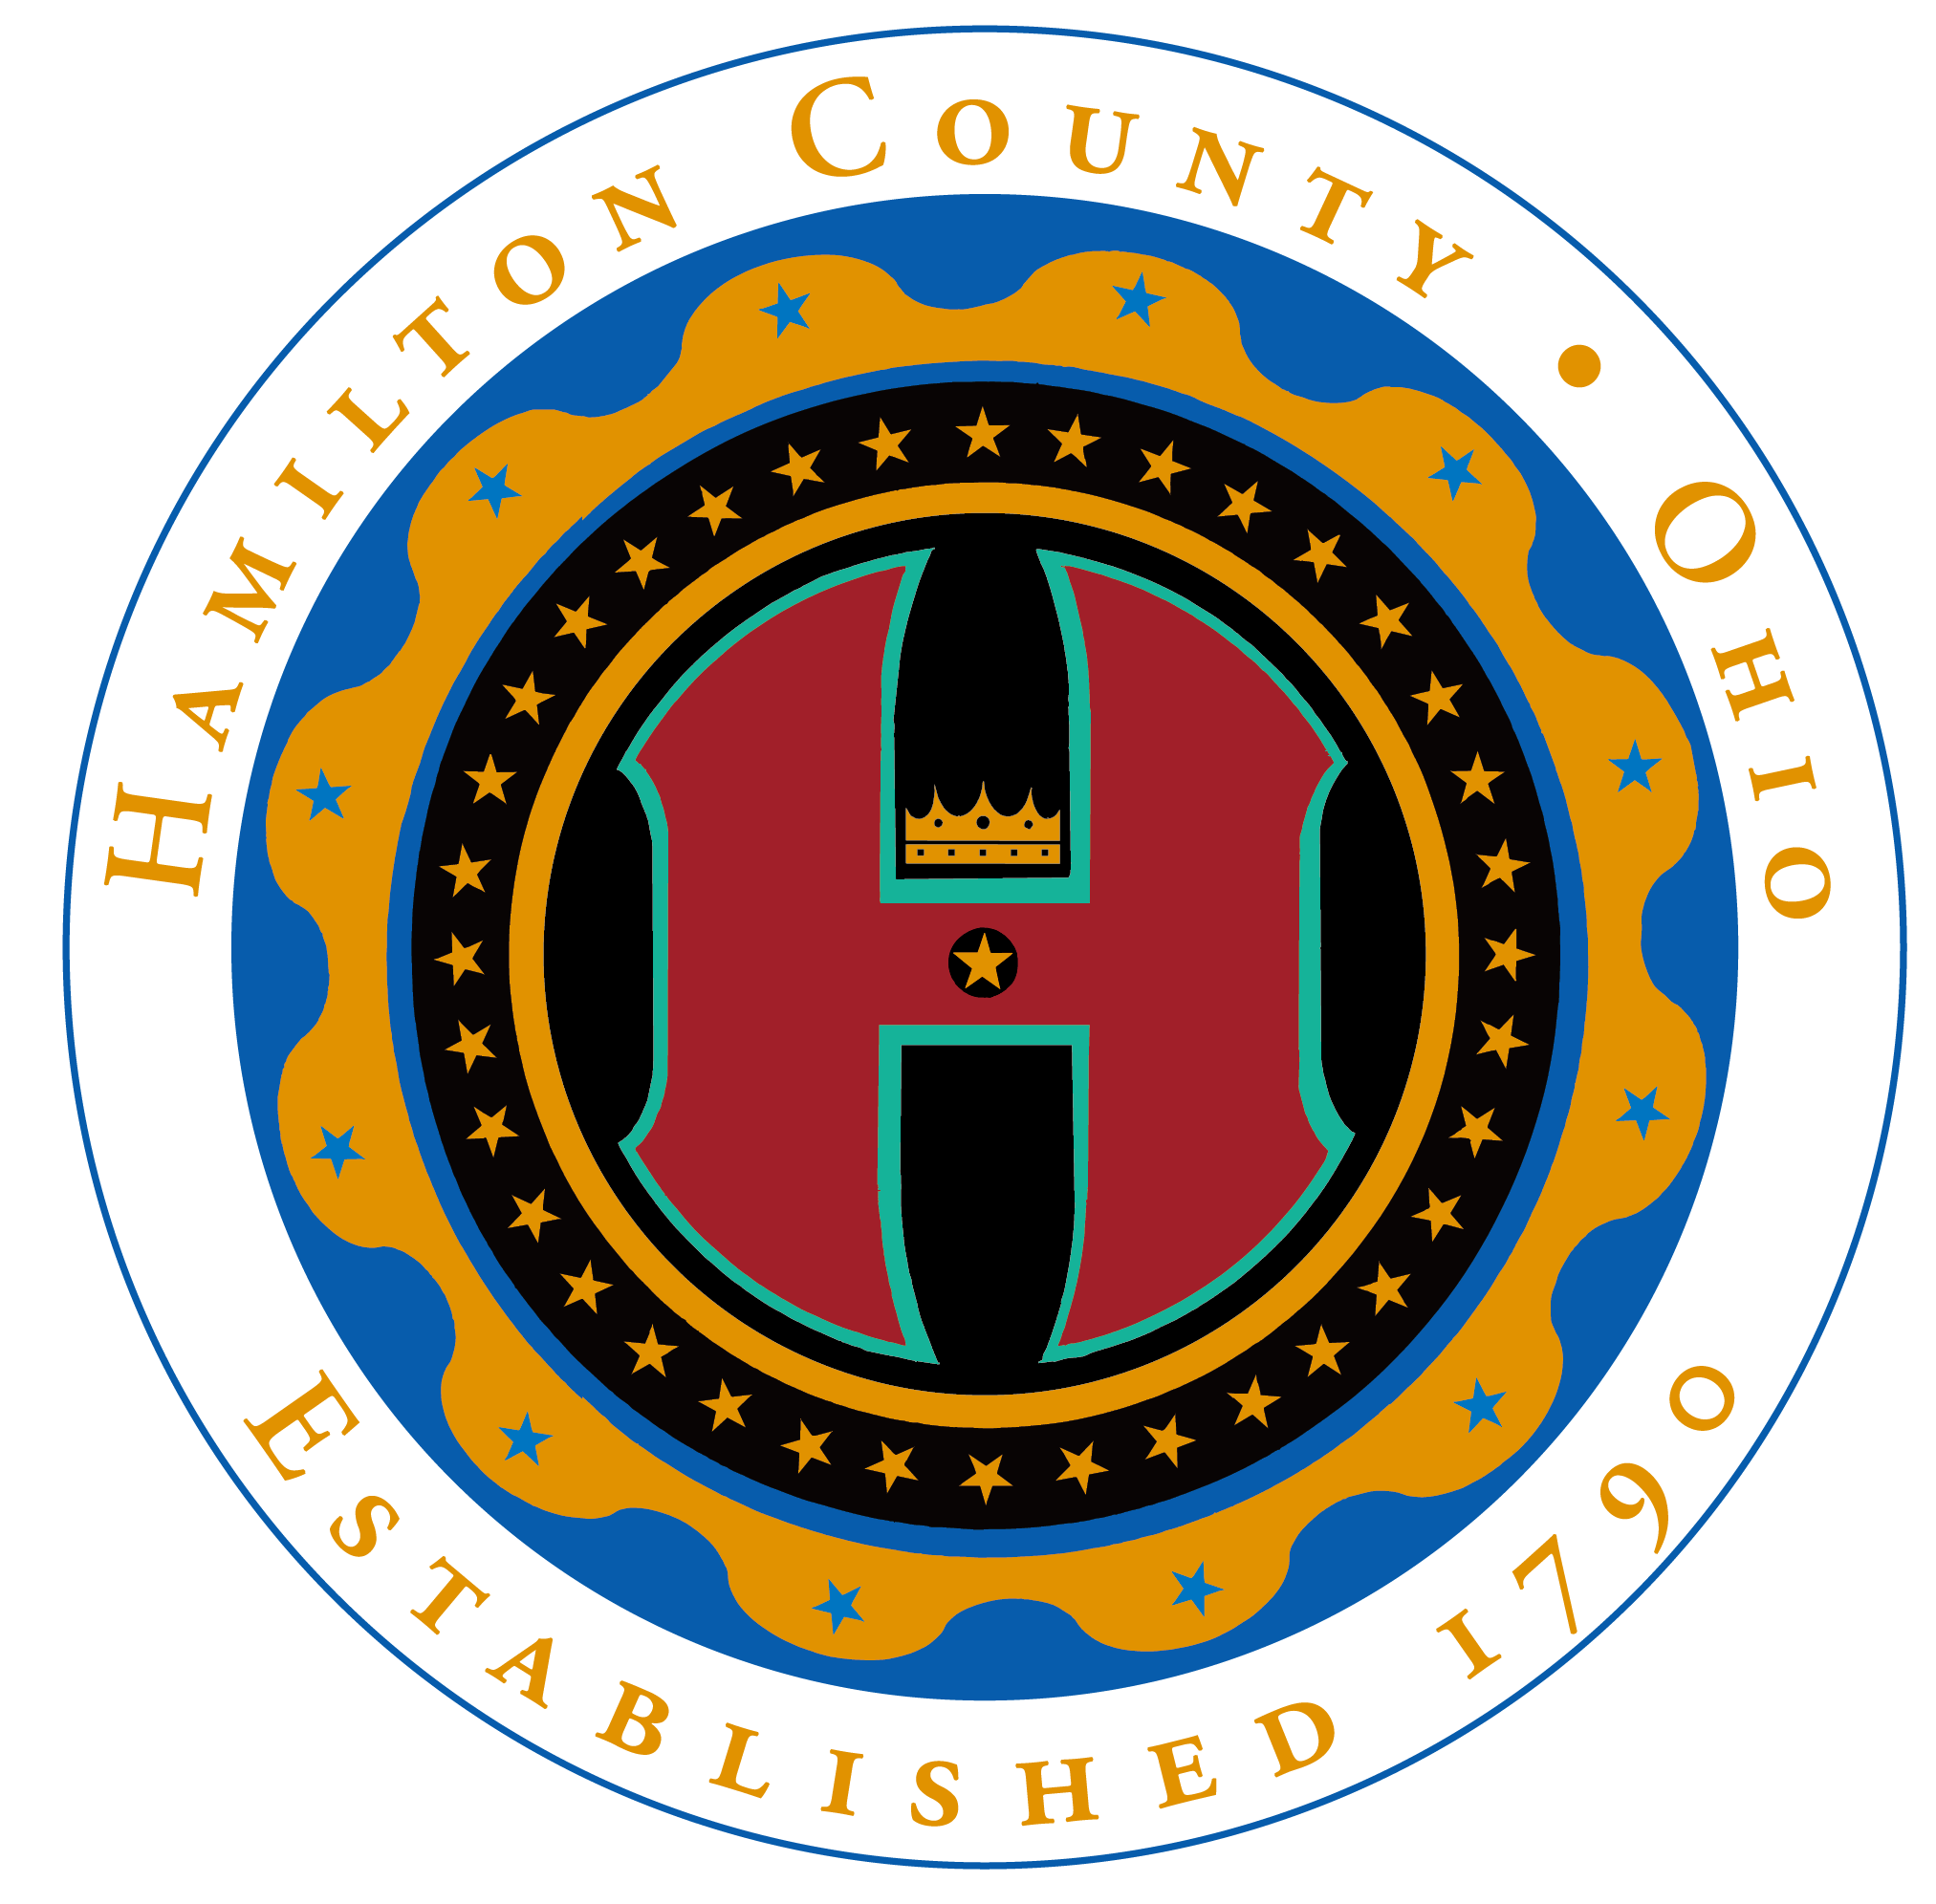 Hamilton County Logo